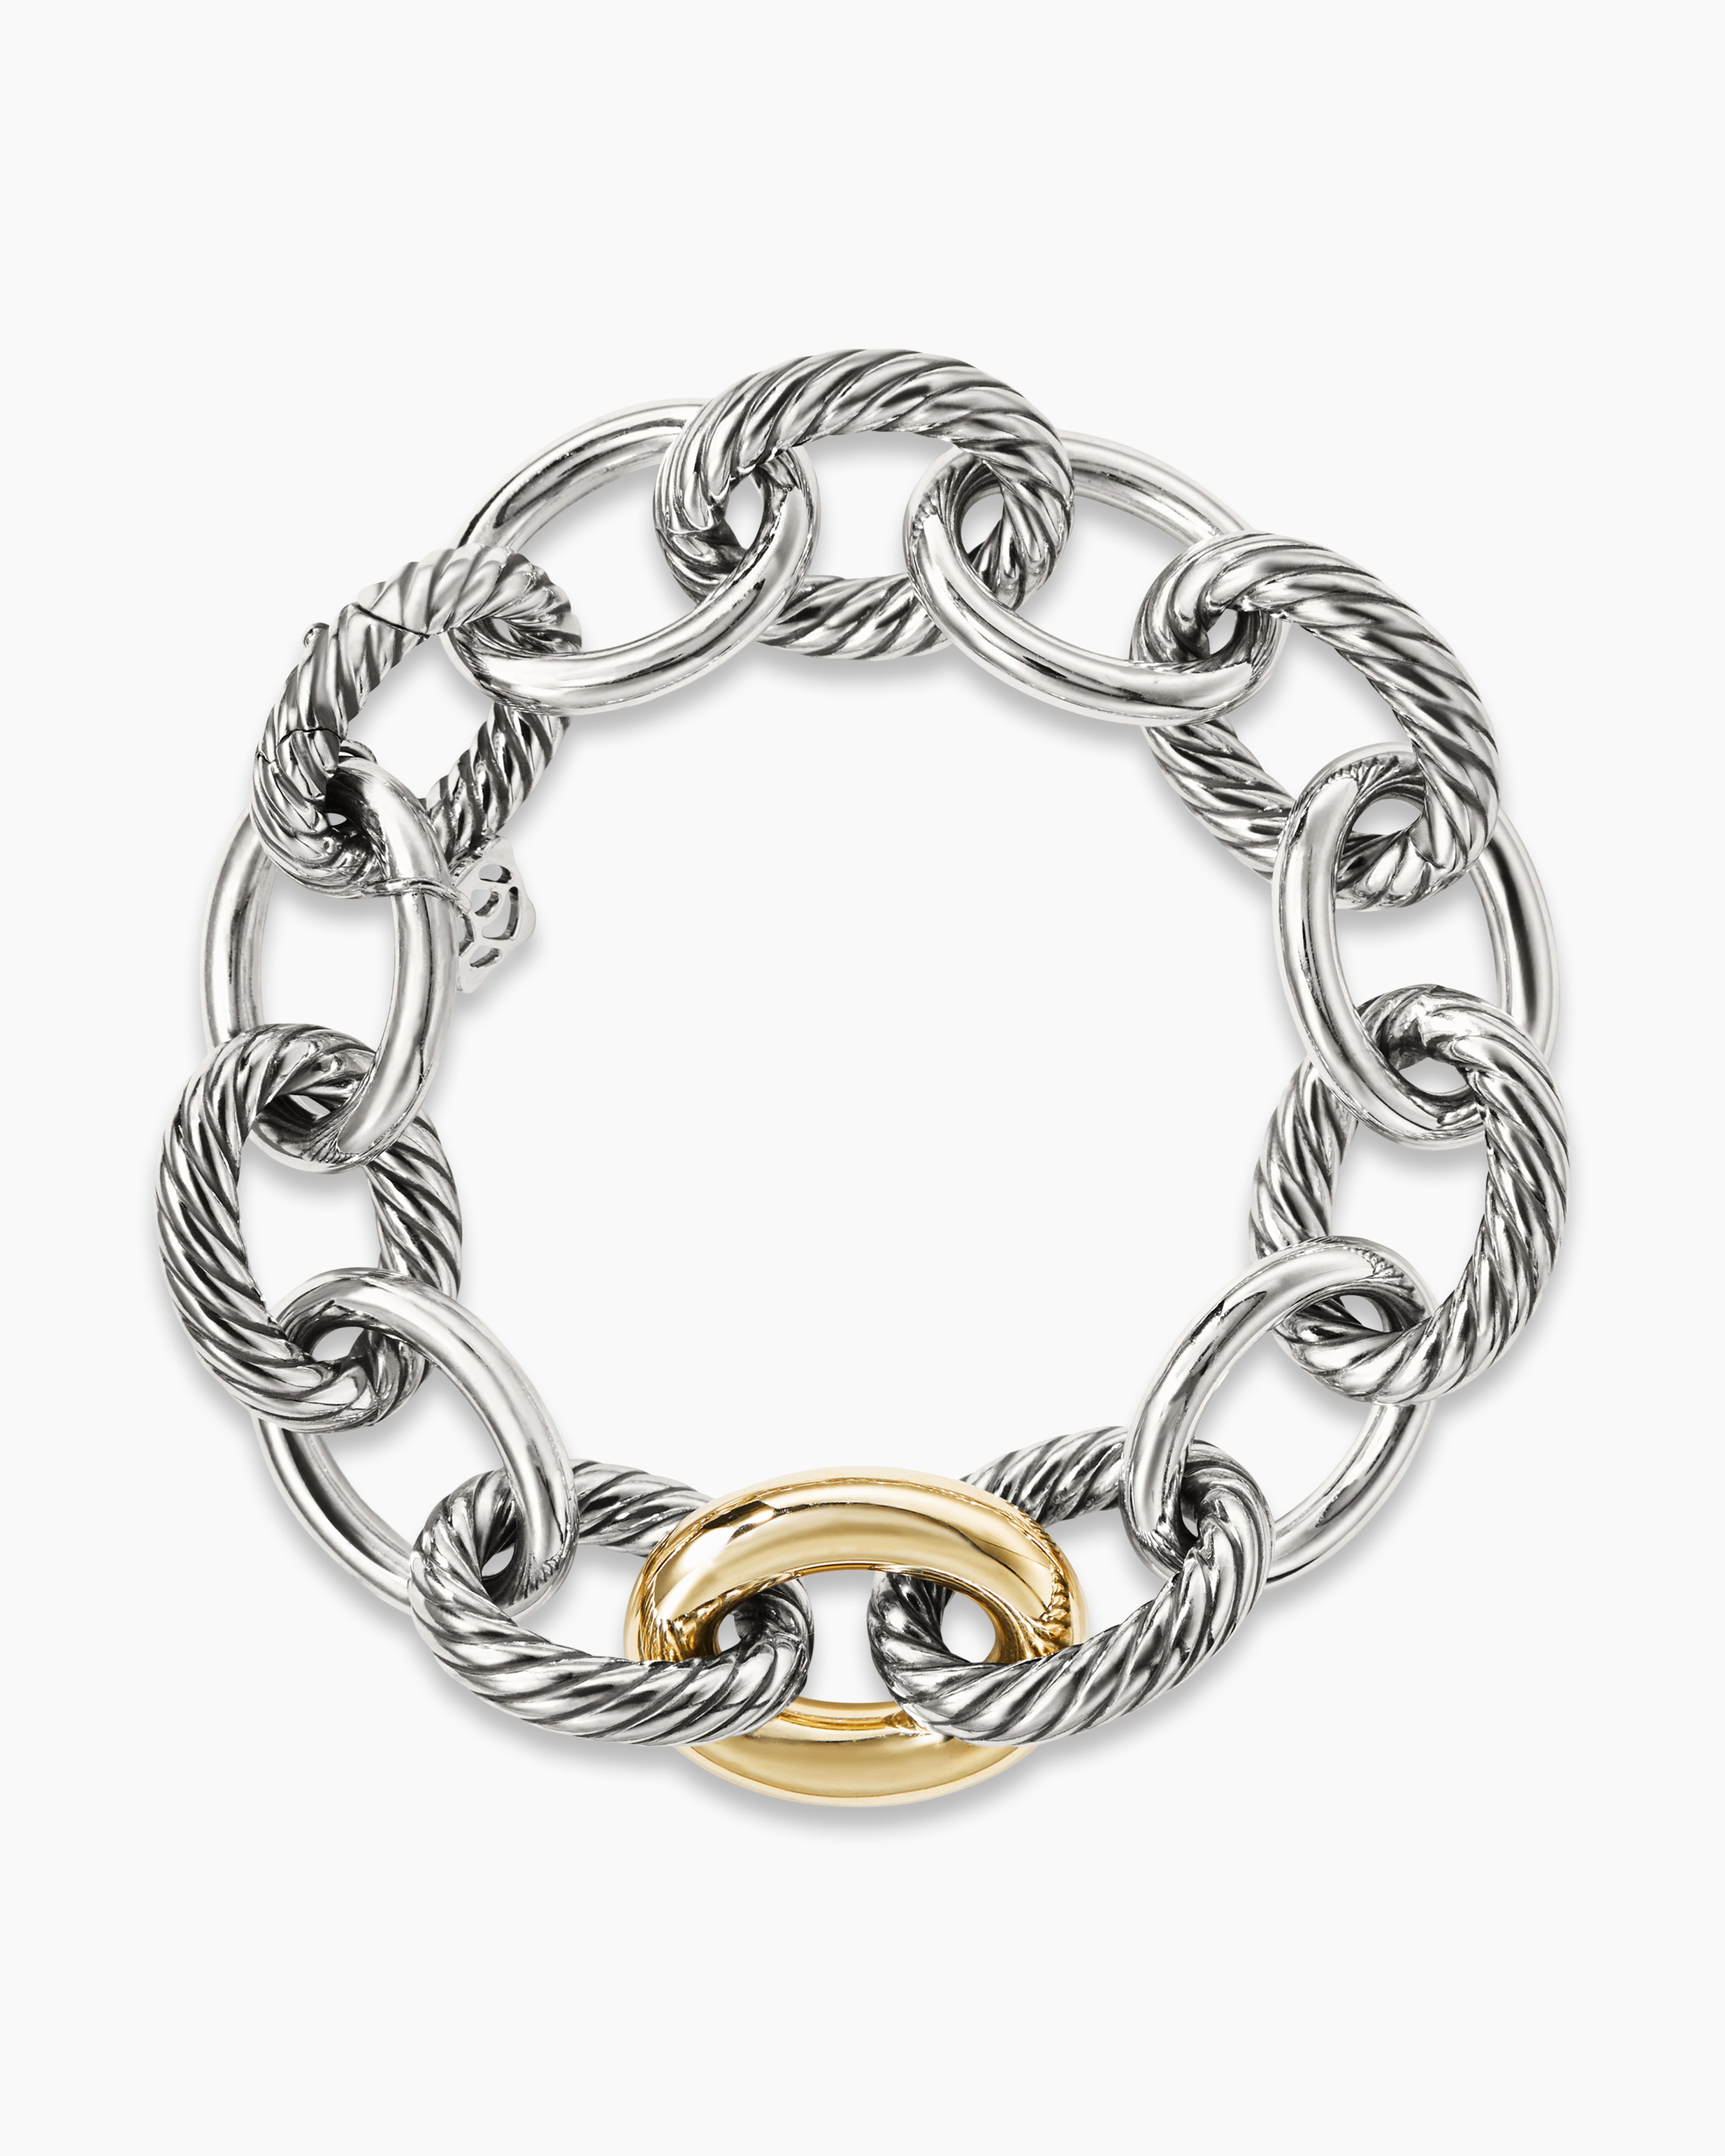 Oval Link Chain Bracelet in 18K Yellow Gold, 12mm | David Yurman